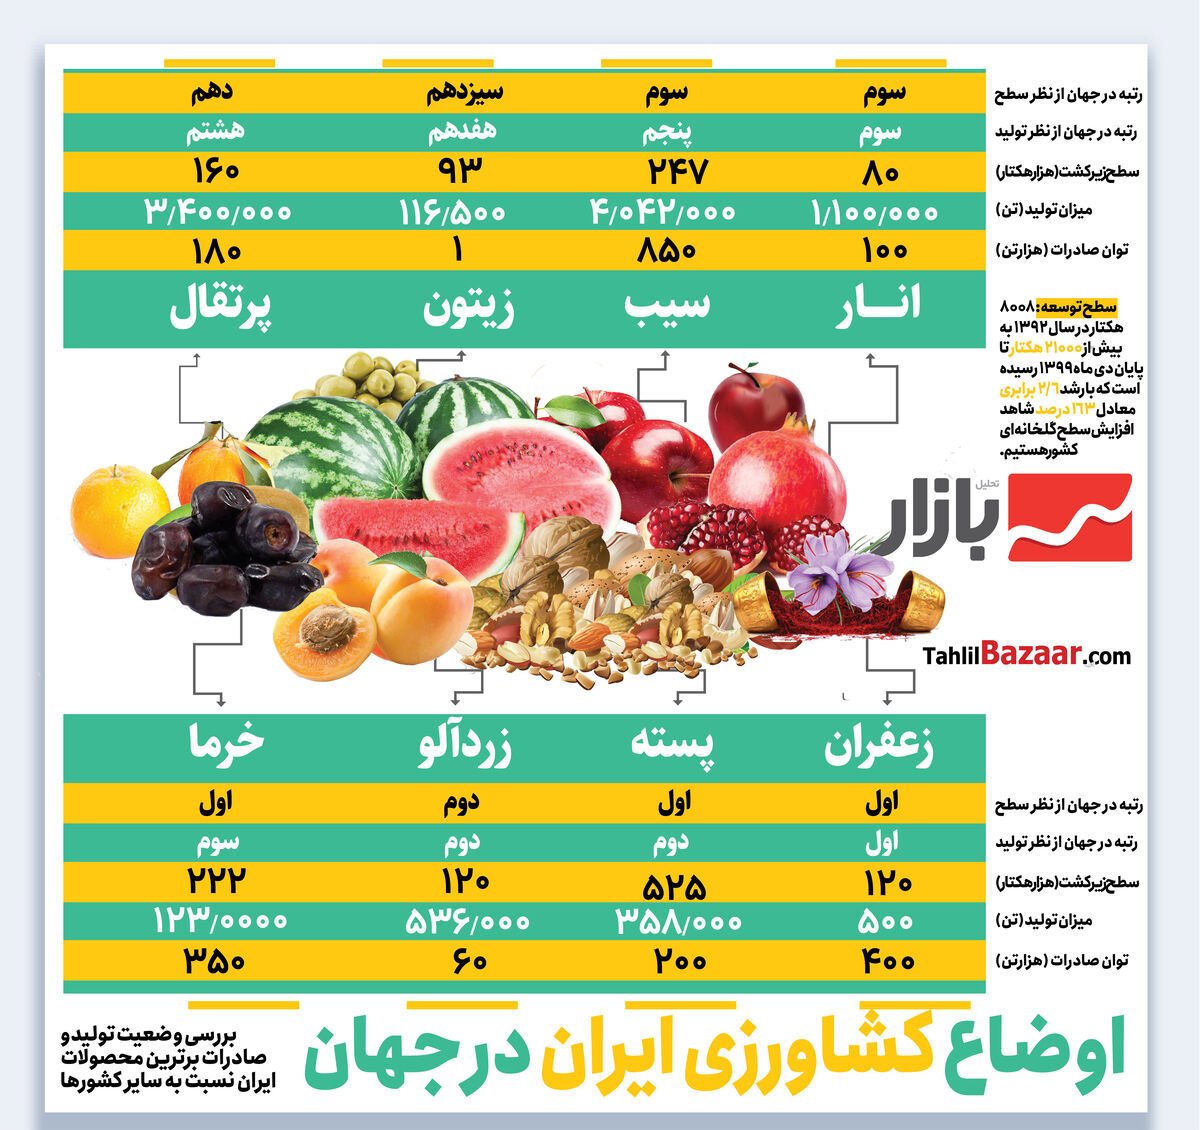 اوضاع کشاورزی ایران در جهان